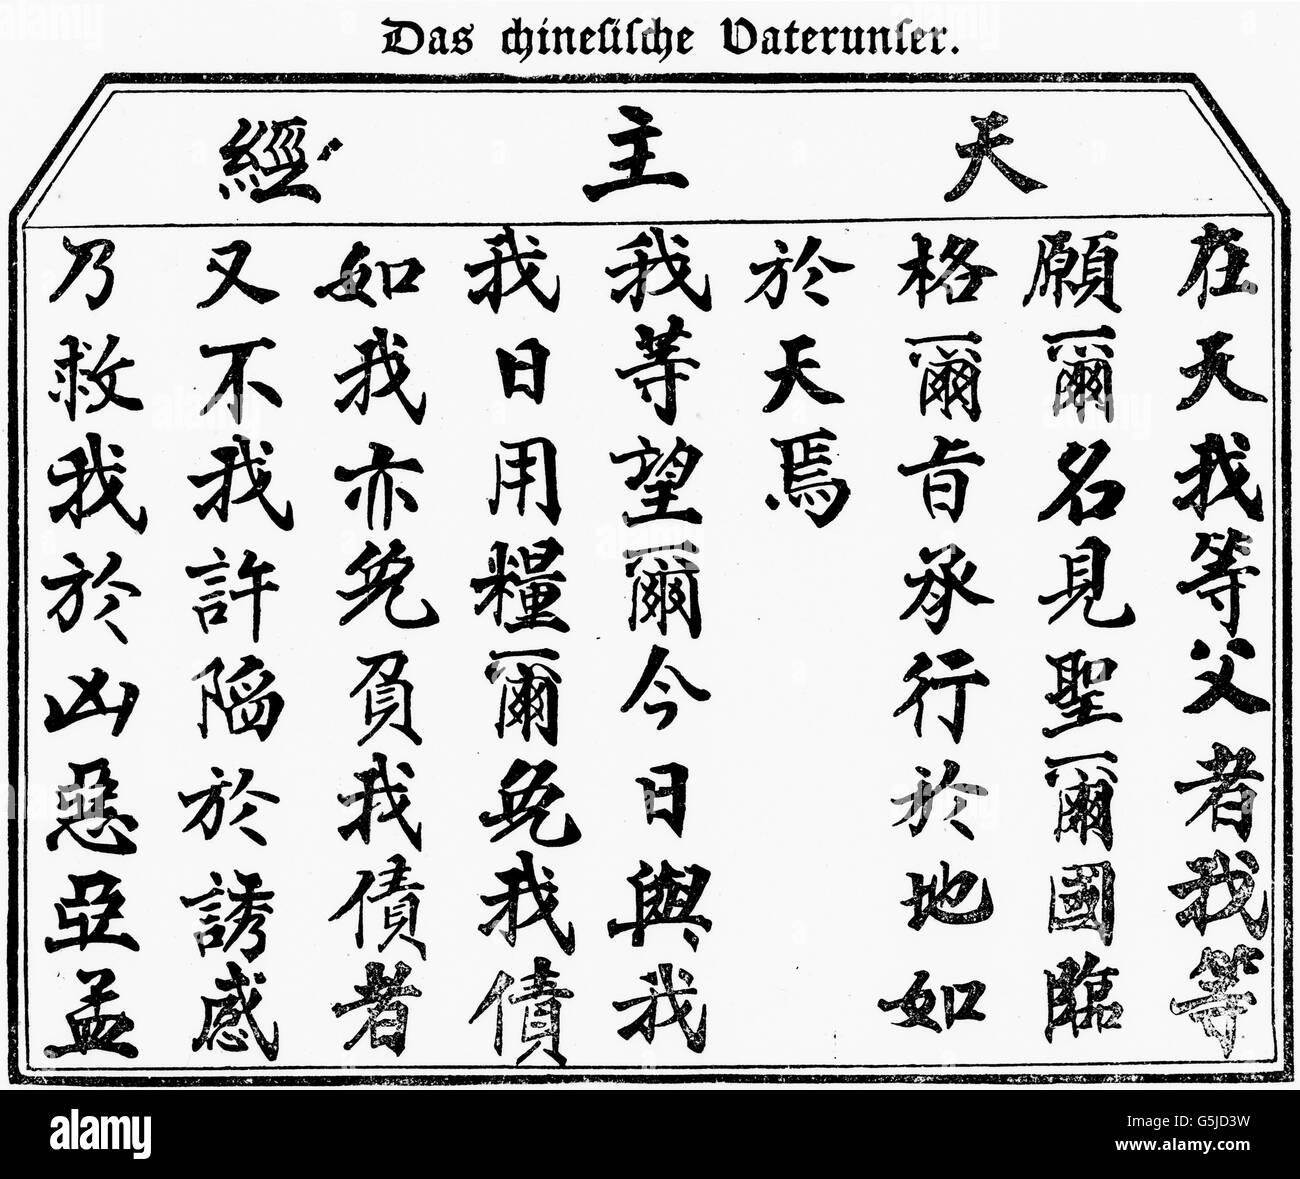 Chinesische Schriftzeichen formen das christliche Vater-unser-Gebet, China 1910er Jahre. Chinese typography form the Christian 'Our father' prayer, China 1910s. Stock Photo